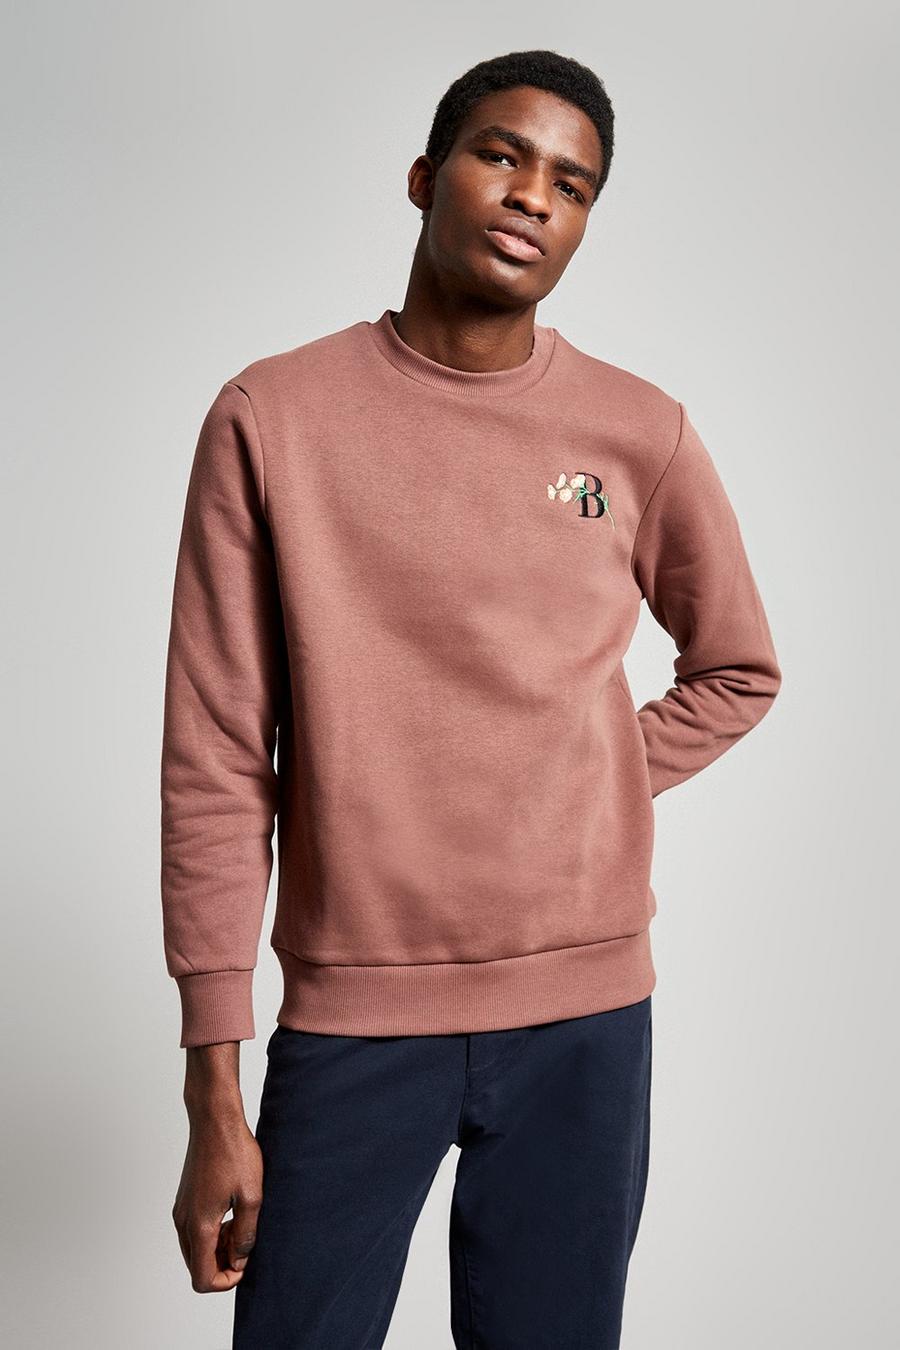 Dark Pink B Embroidered Sweatshirt